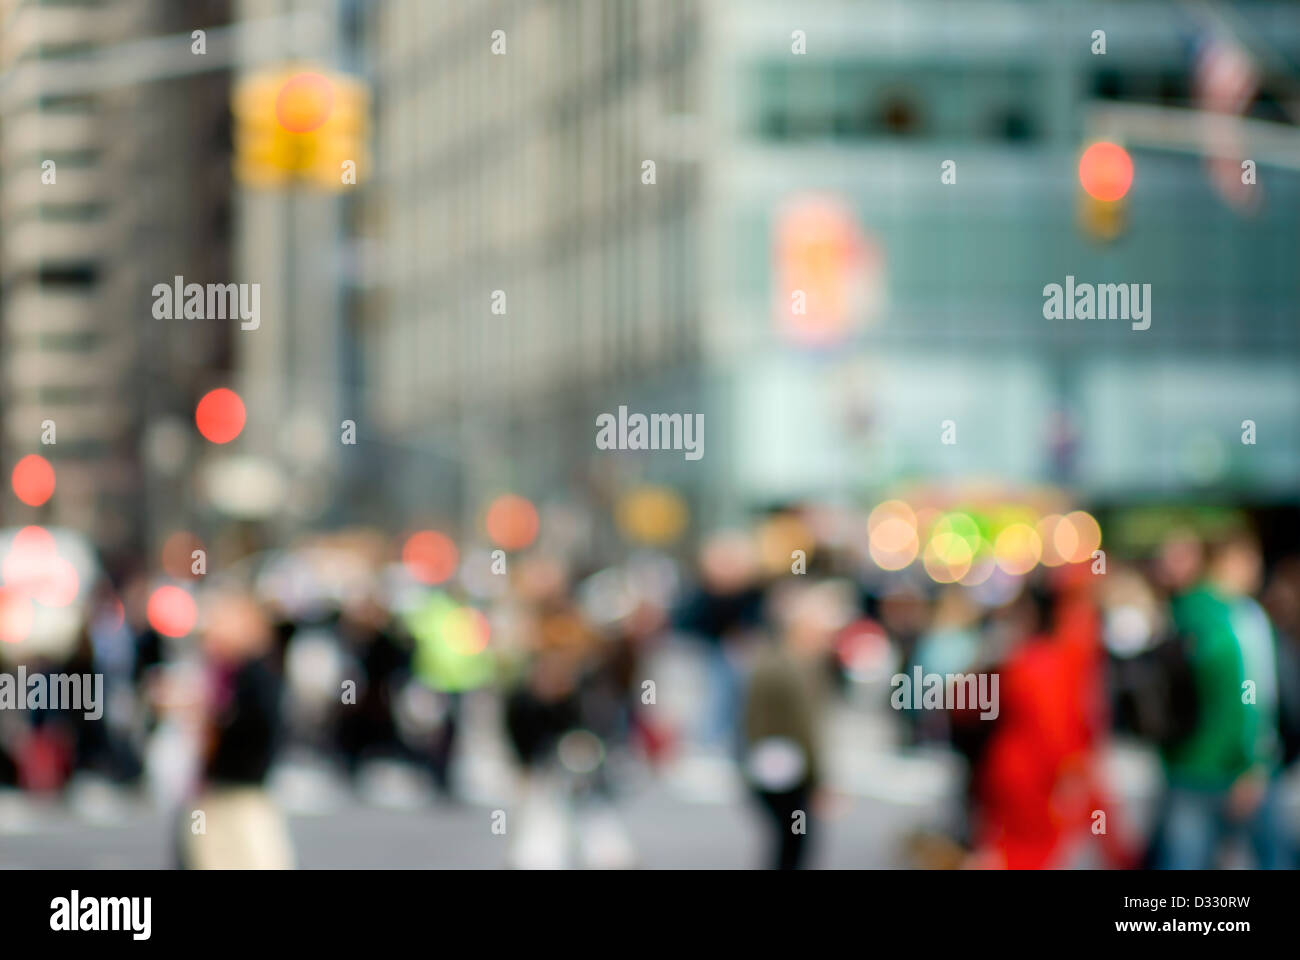 Résumé de la scène urbaine avec des piétons et des personnes, la ville de New York. Banque D'Images